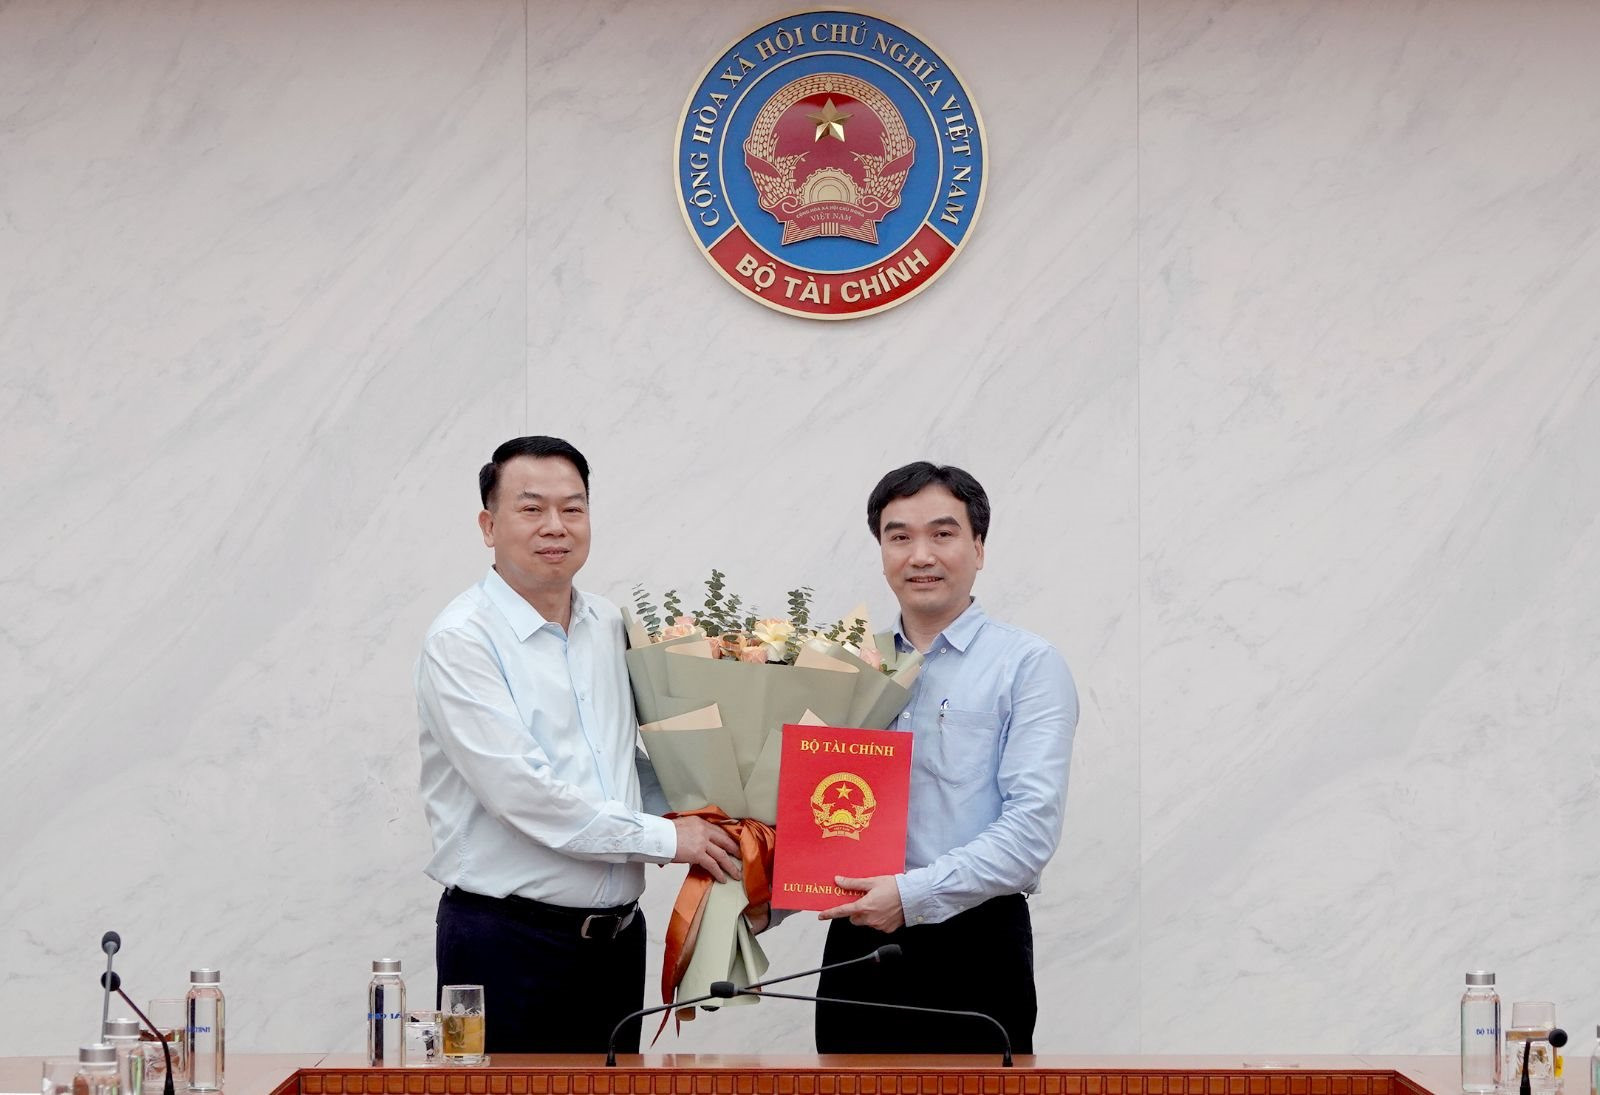 Bộ Tài chính bổ nhiệm ông Phạm Văn Bình làm Phó Cục trưởng Cục Quản lý giá - Ảnh 1.